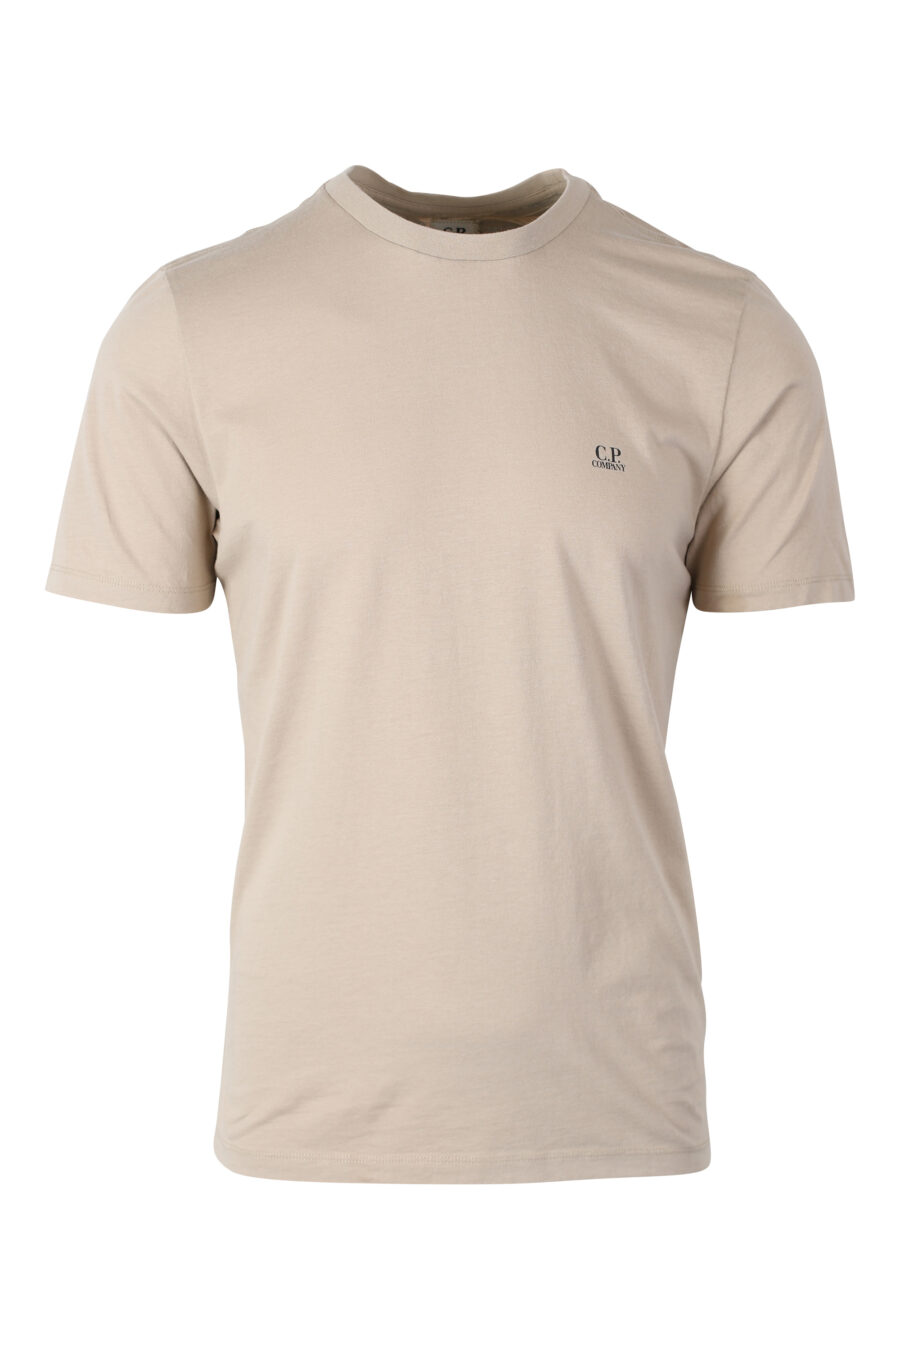 Camiseta marrón claro con minilogo parche y estampado atrás - IMG 2391